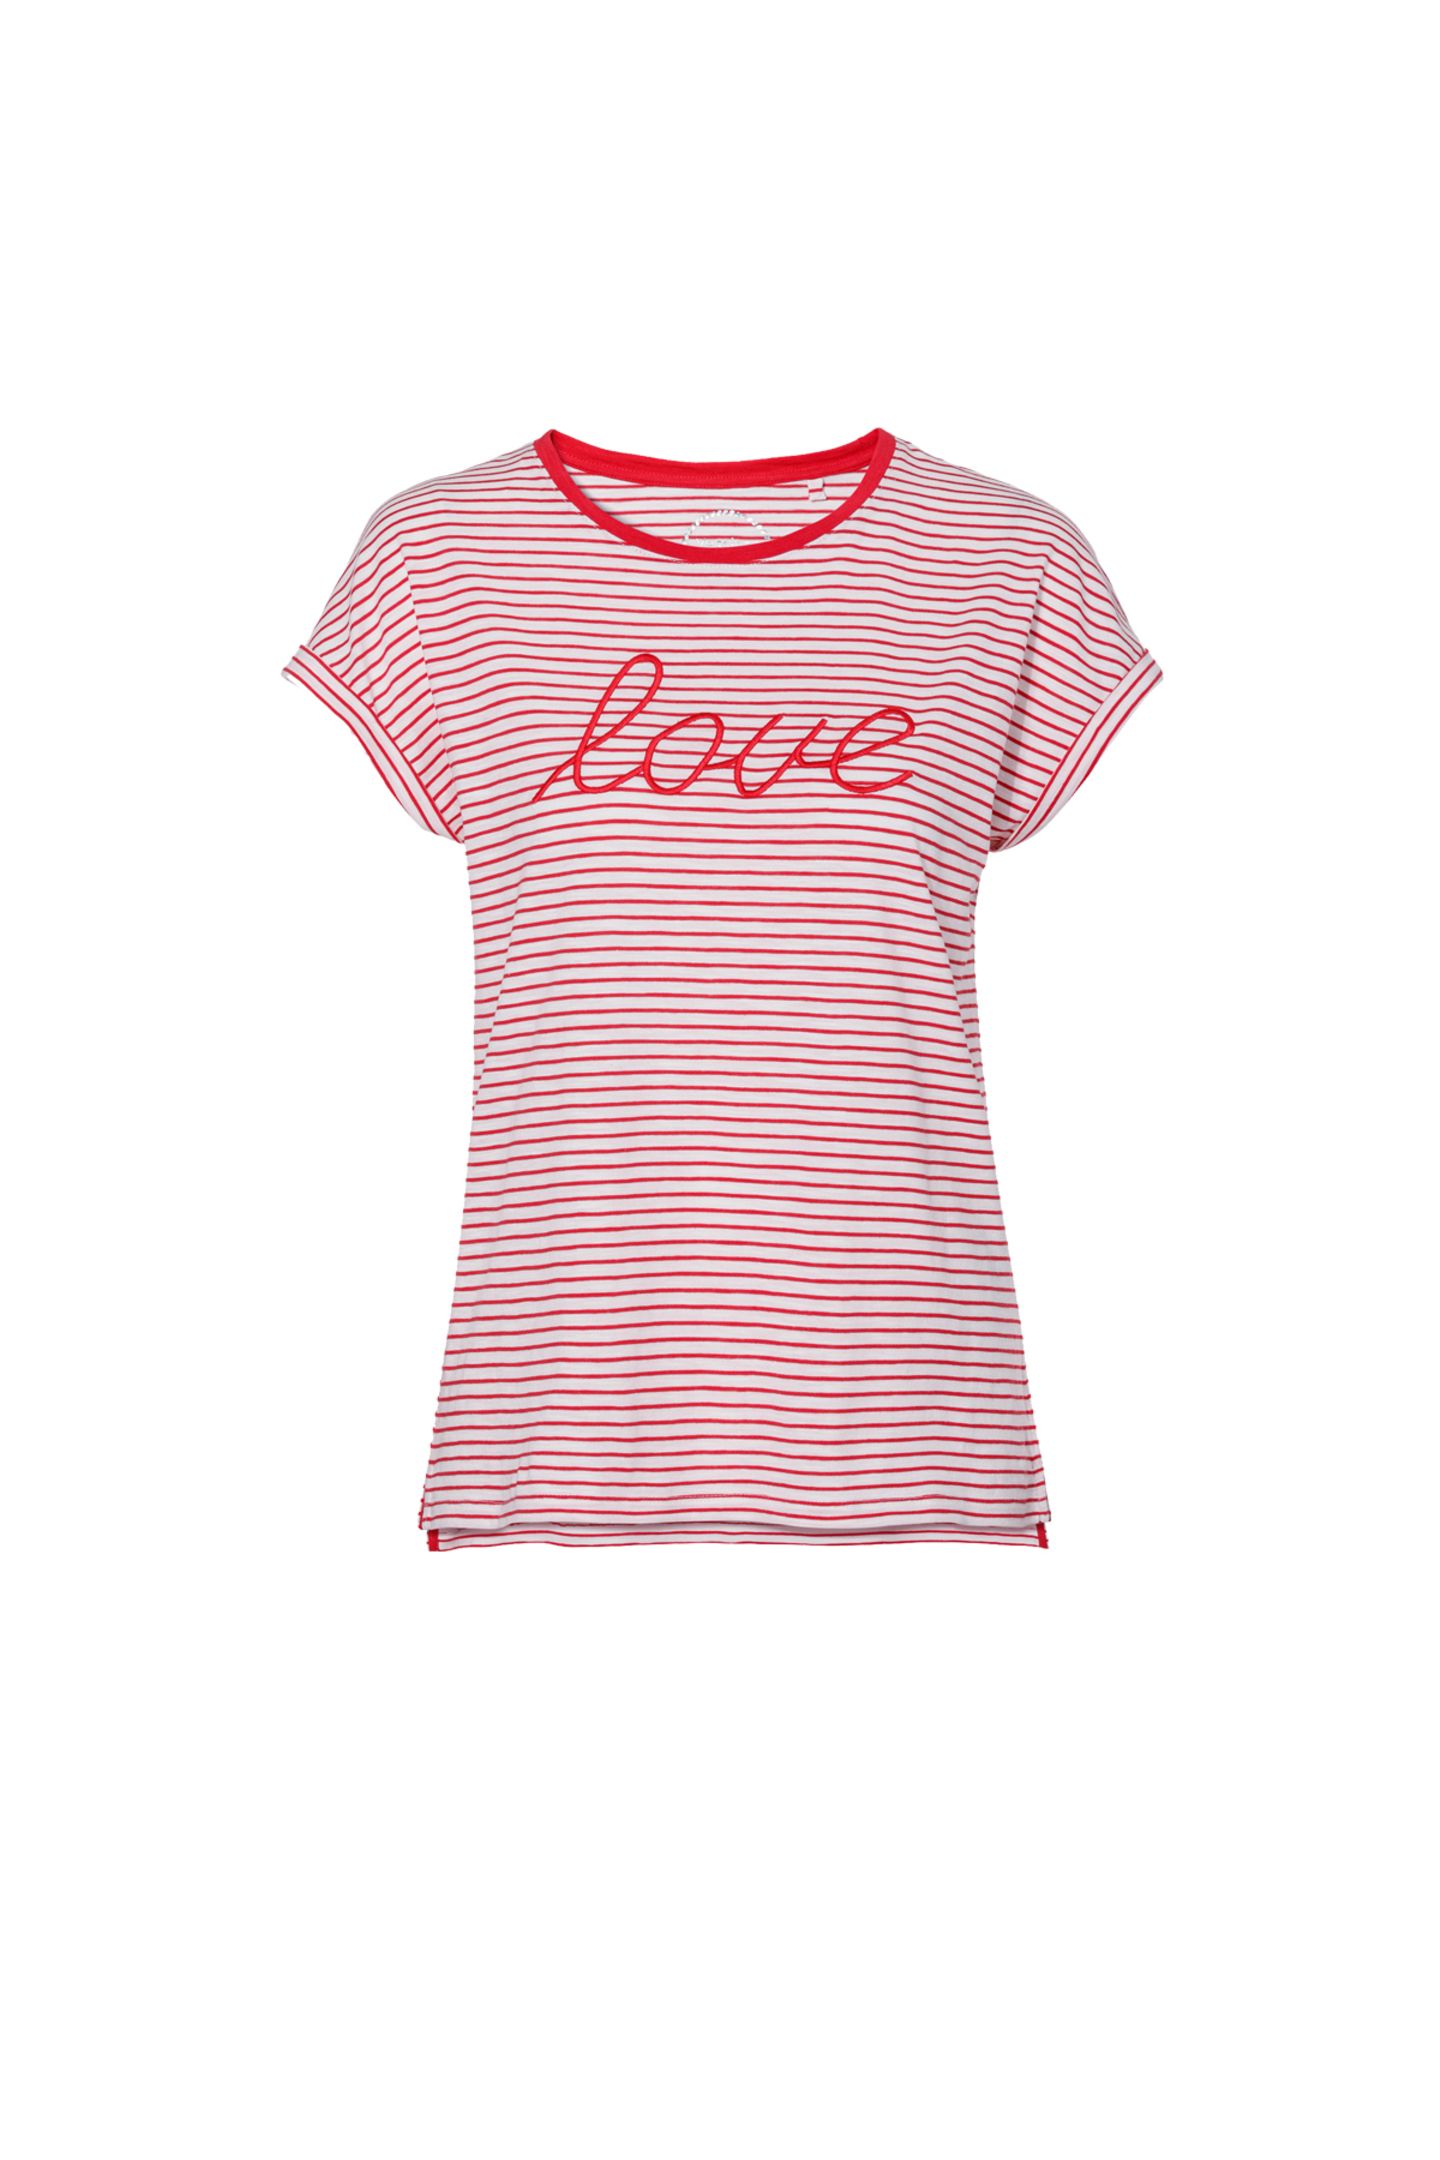 Mit Liebe gestylt: Das gestreifte T-Shirt aus Bio-Baumwolle begeistert mit aufgesticktem Love-Schriftzug. Von C&A, kostet ca. 10 Euro. 